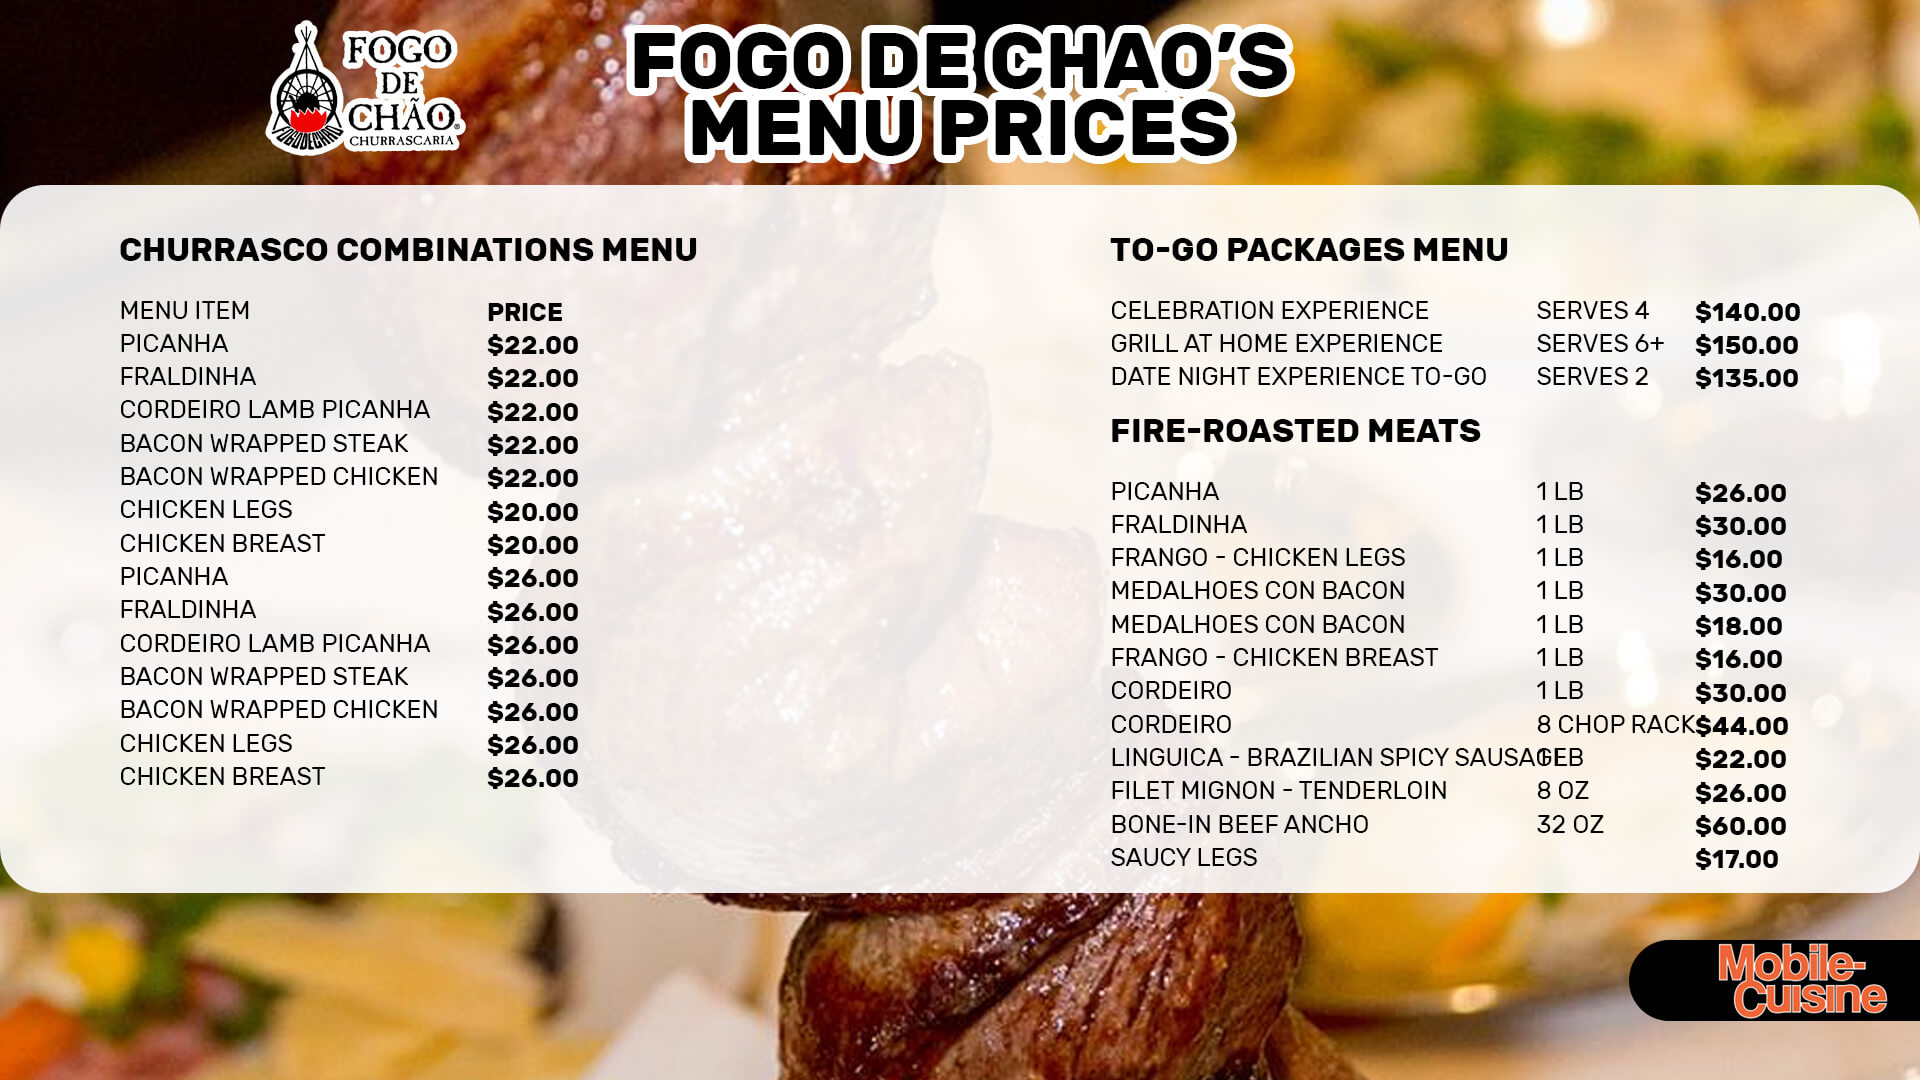 Fogo de Chao menu prices